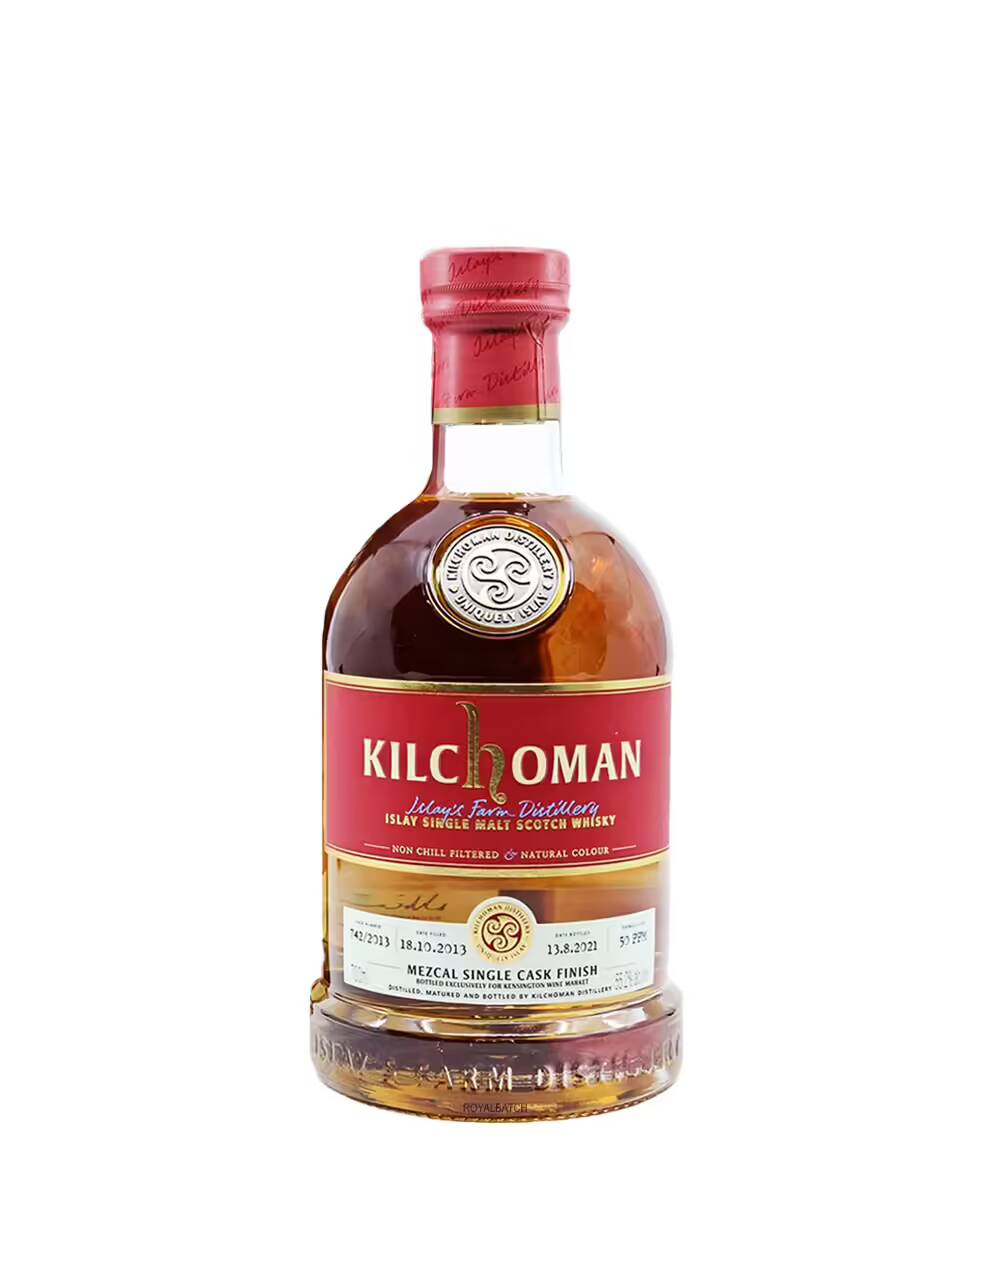 Kilchoman Mezcal Single Cask Finish 2013 Single Malt Scotch Whisky